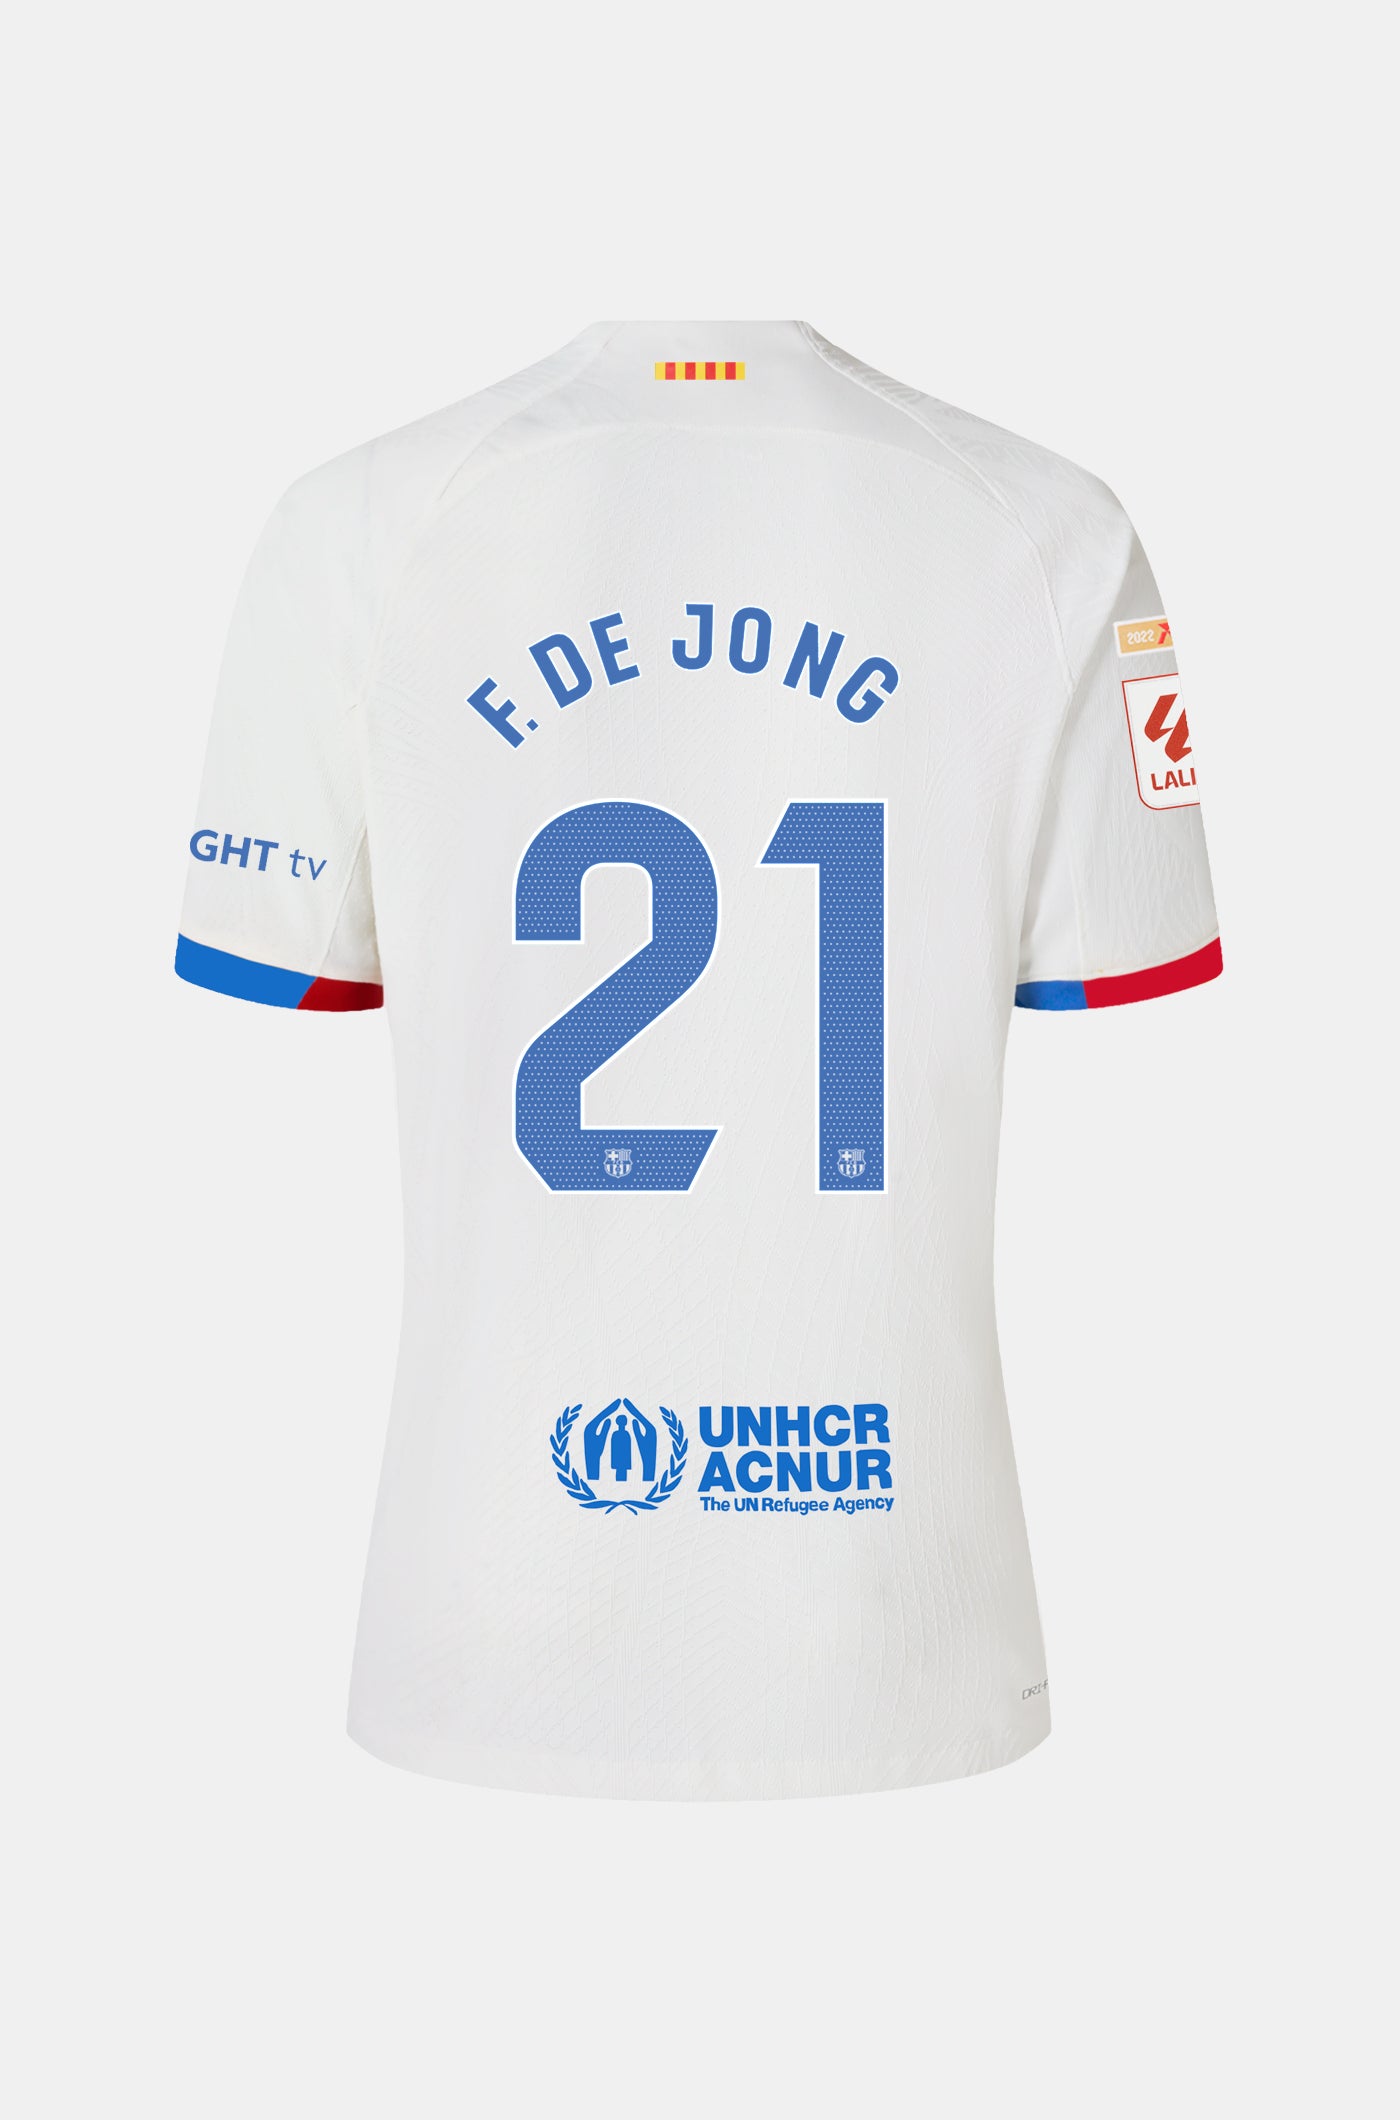 LFP Camiseta segunda equipación FC Barcelona 23/24  - F. DE JONG